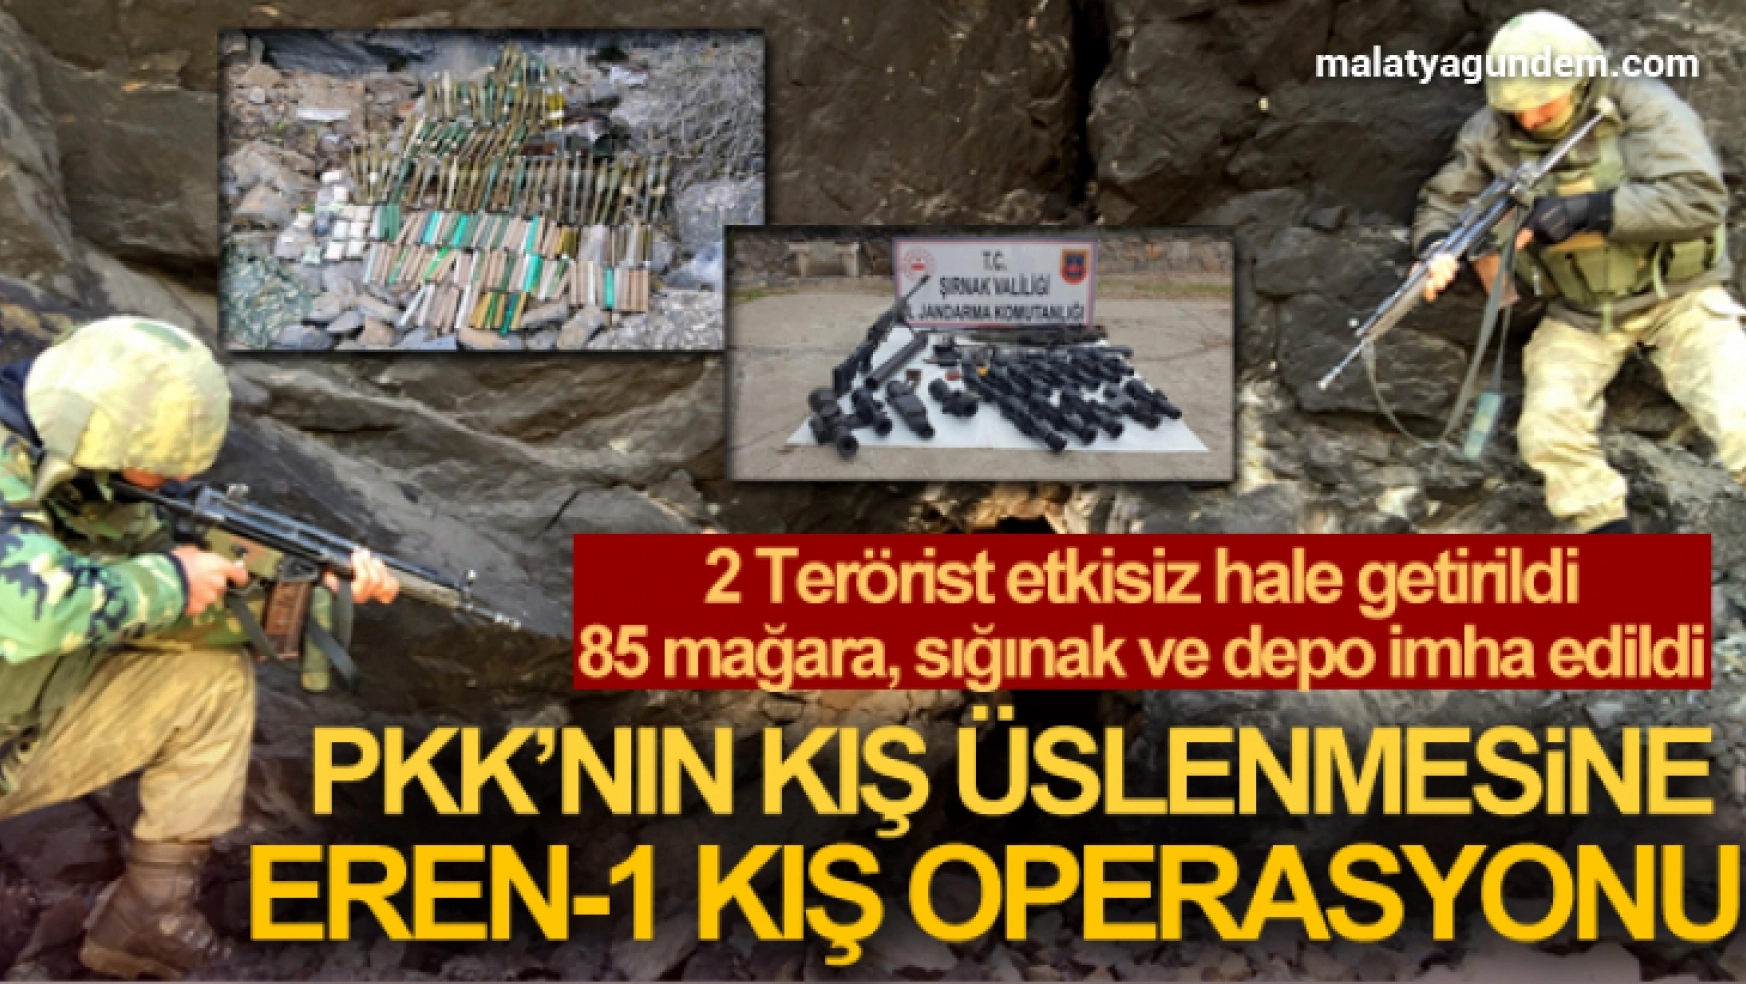 PKK'nın kış üslenmesine Eren-1 Kış Operasyonu darbesi